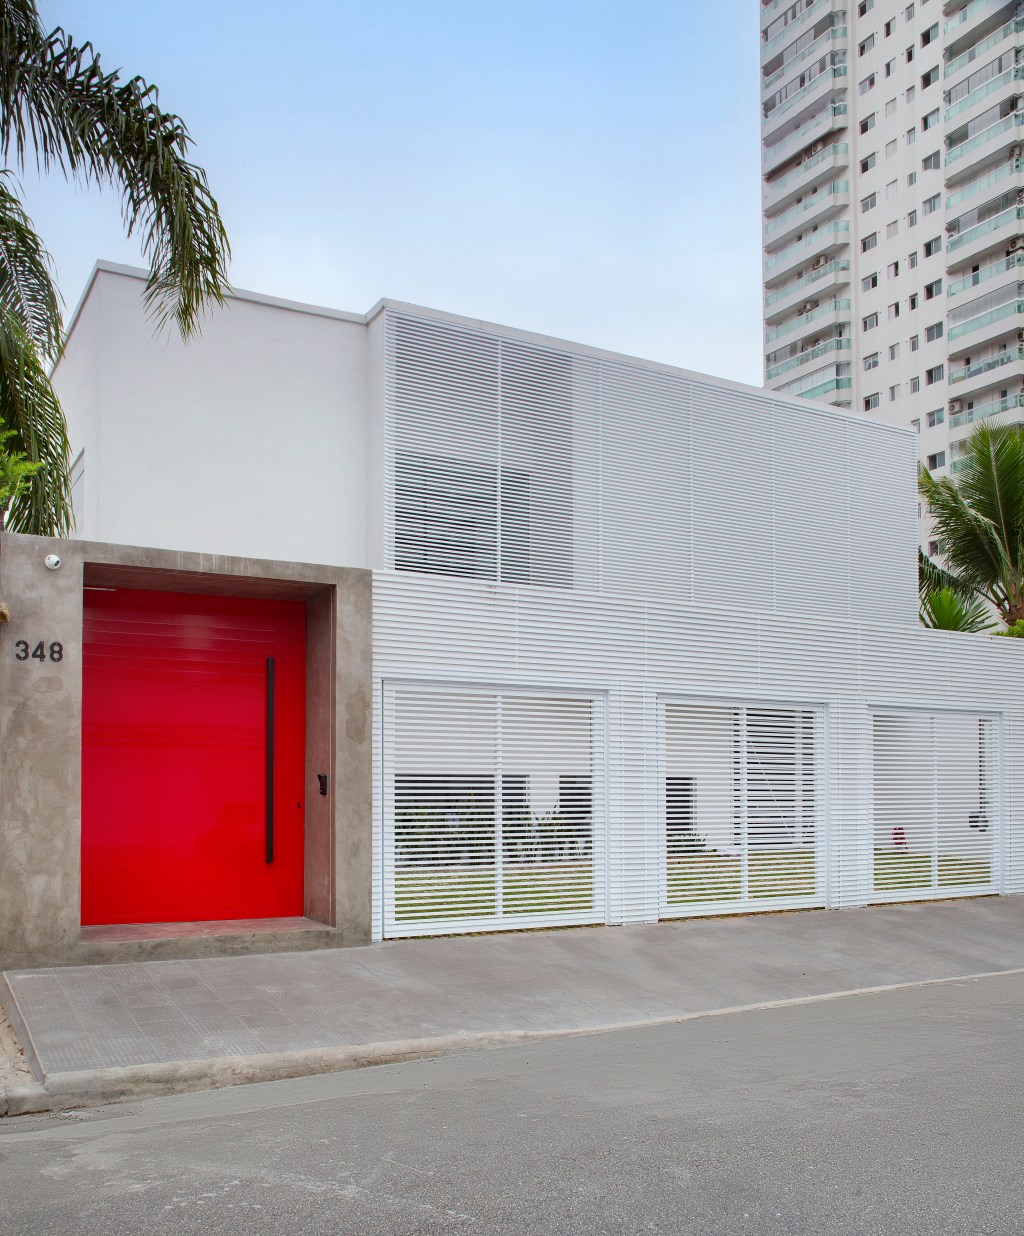 Paixão pelo automobilismo norteia o projeto desta casa de praia. Projeto de Gabriel Fernandes. Na foto, fachada com porta vermelha.